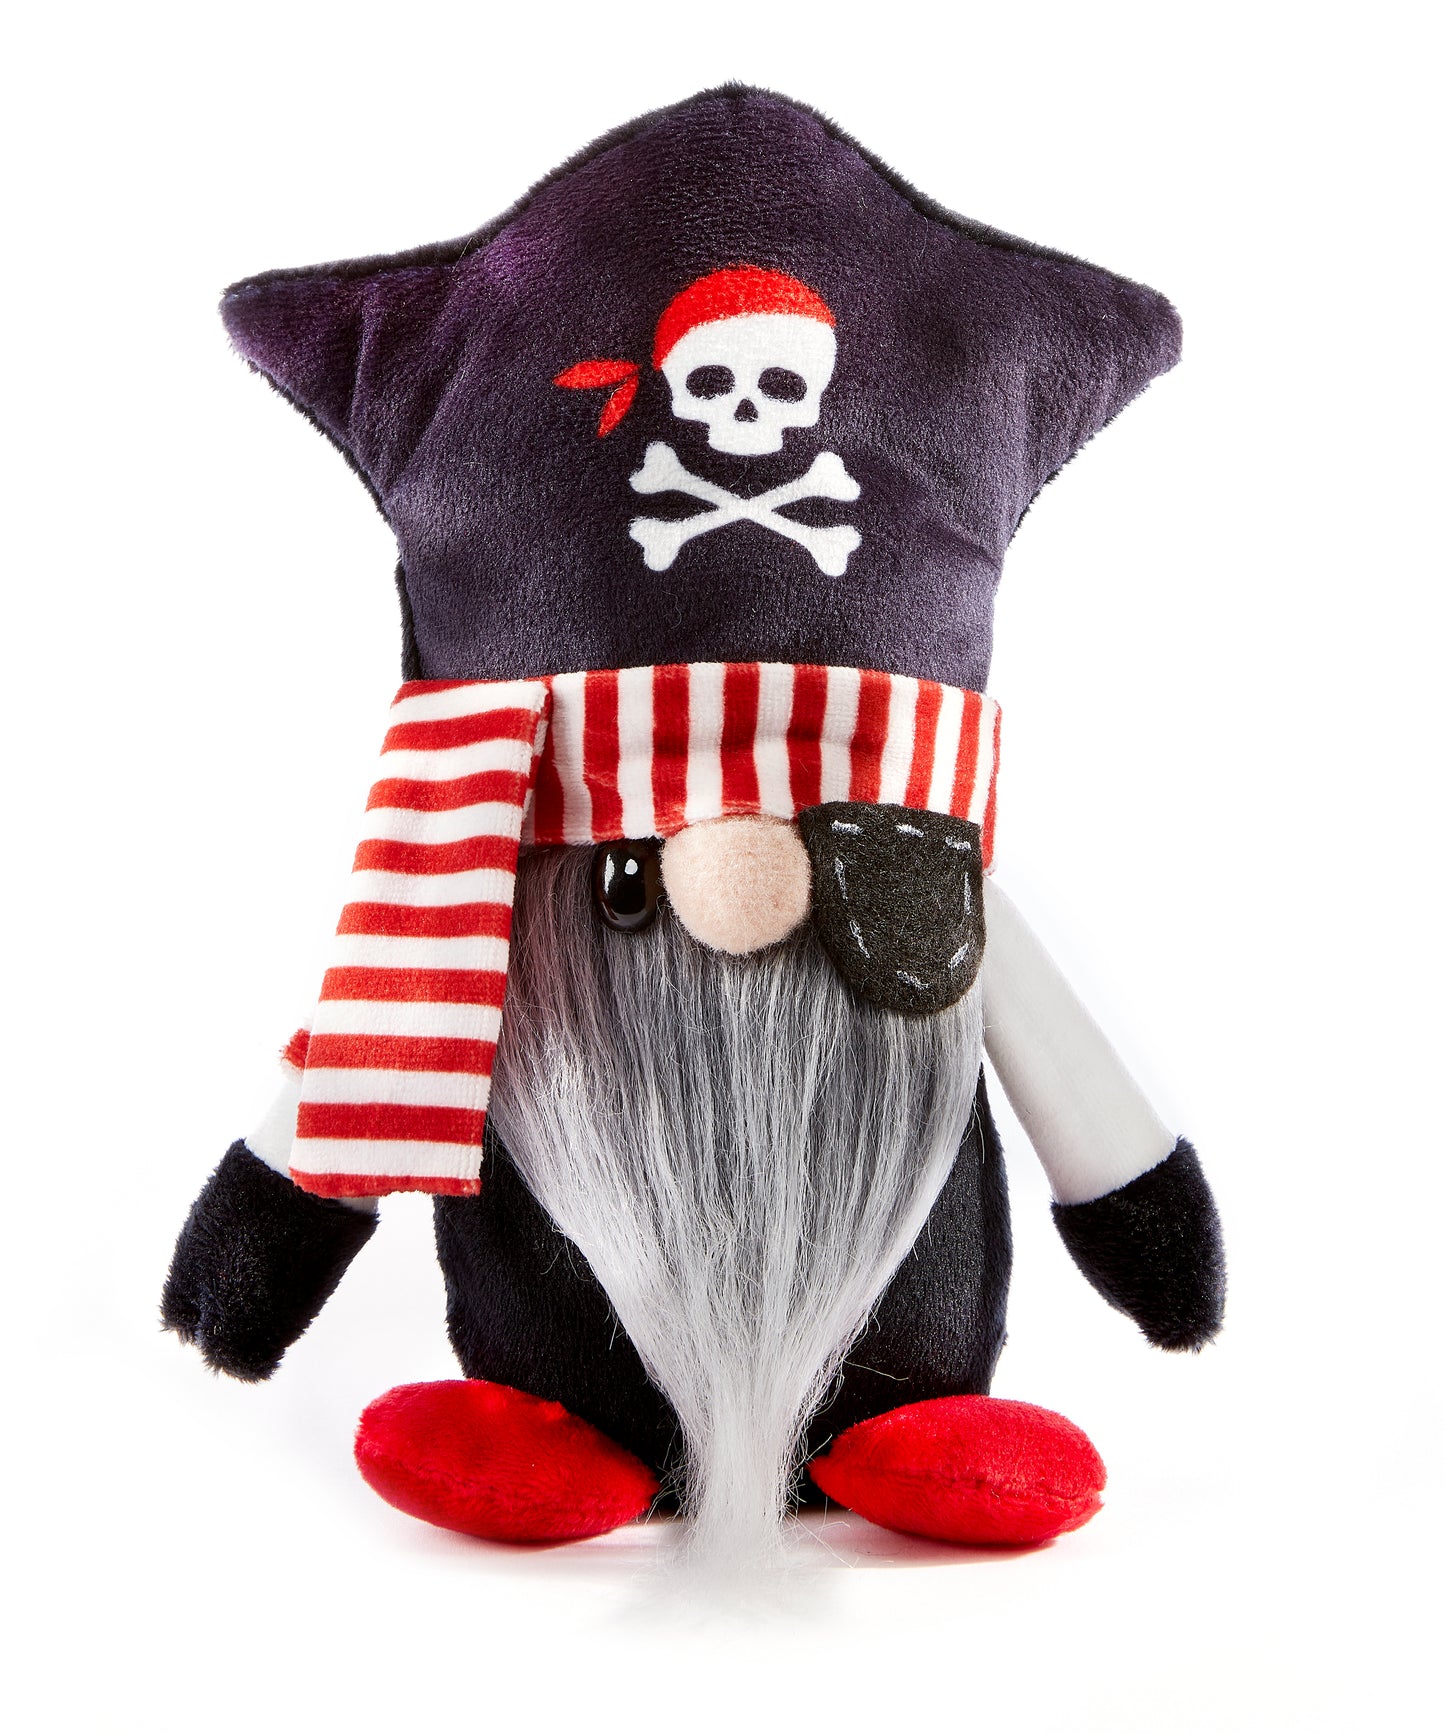 Gnome Pirate Capitaine Bligh